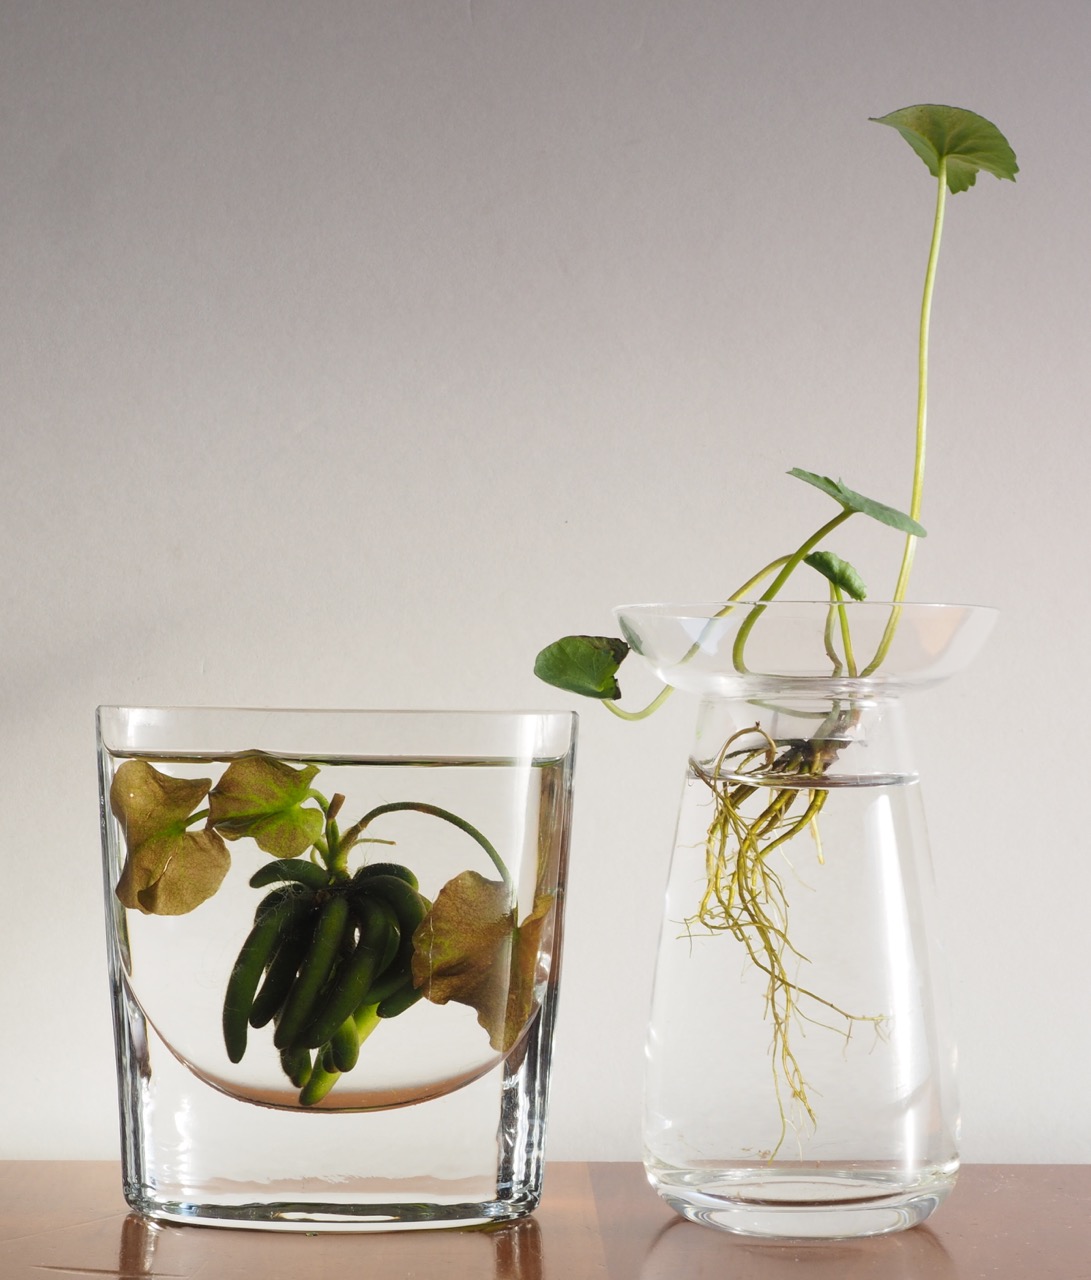 根の姿も楽しめる透明な花瓶 インテリア季節 クールシニアマガジン